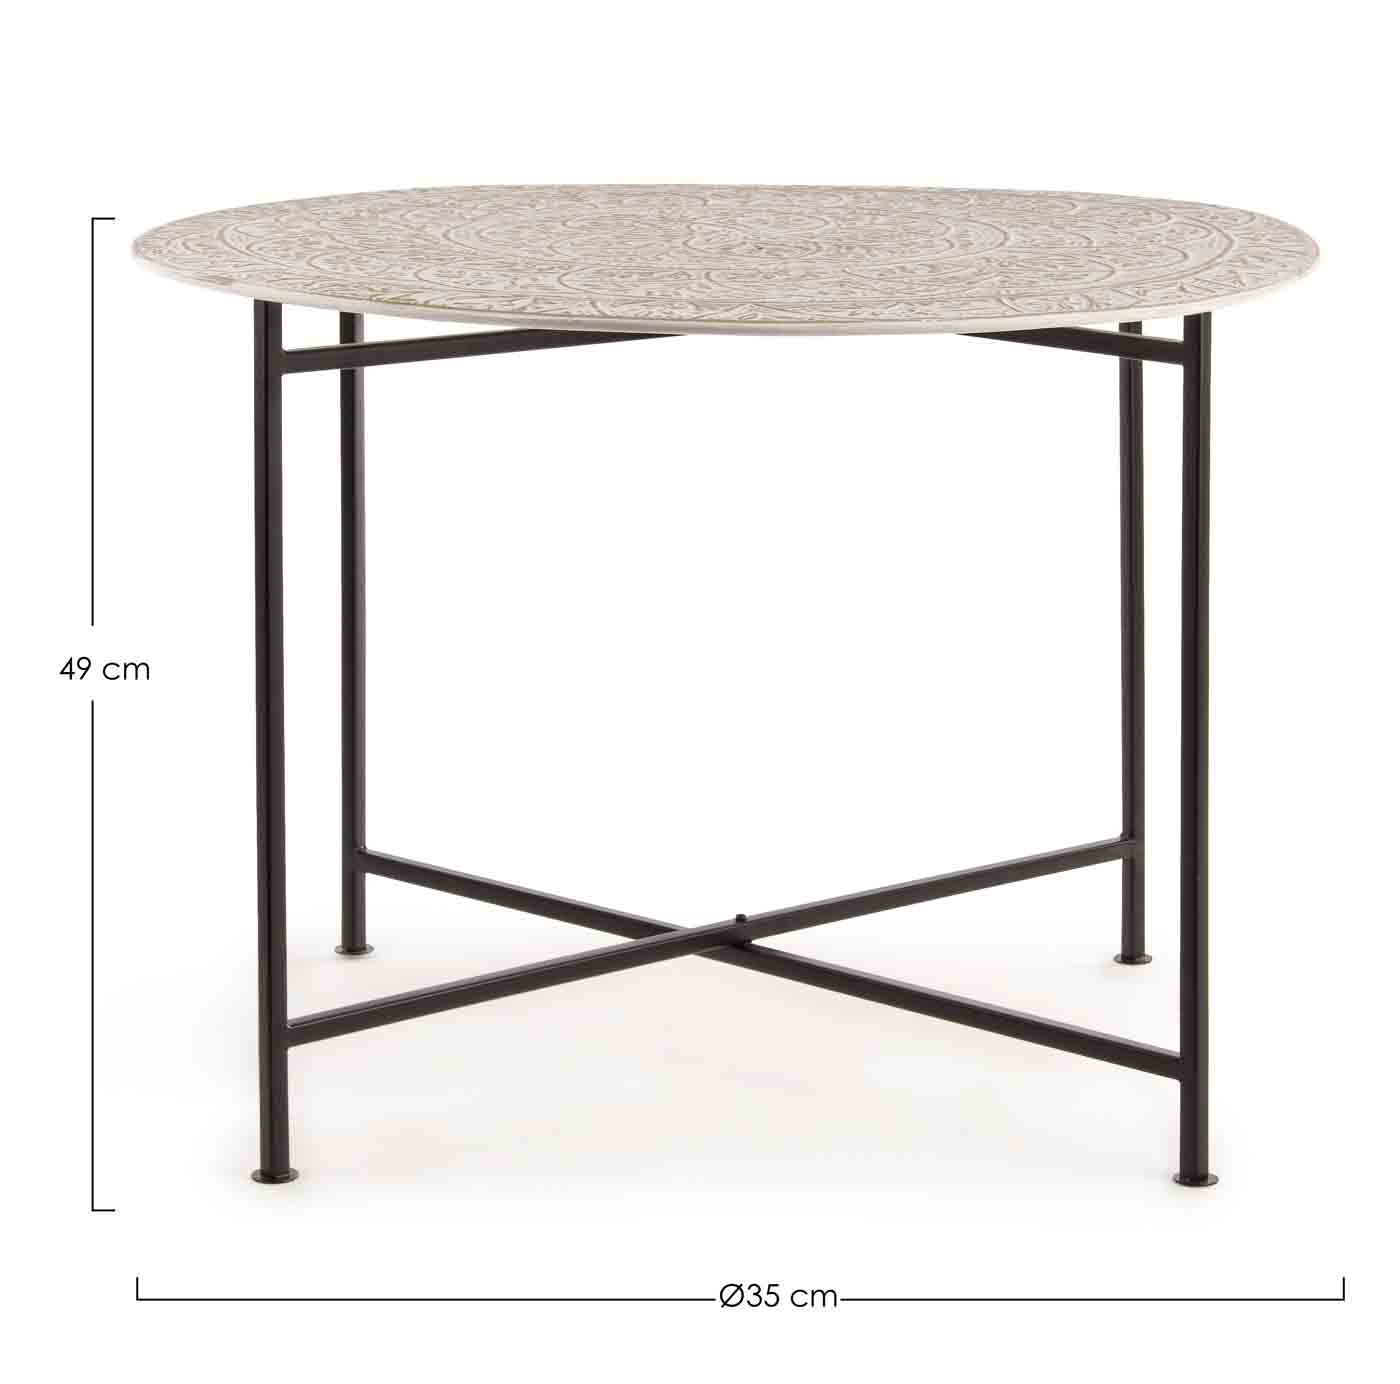 Der Beistelltisch Anil wurde aus Metall gefertigt. Die Oberfläche ist versilbert und abnehmbar. Der Tisch ist in verschiedenen Ausführungen erhältlich.